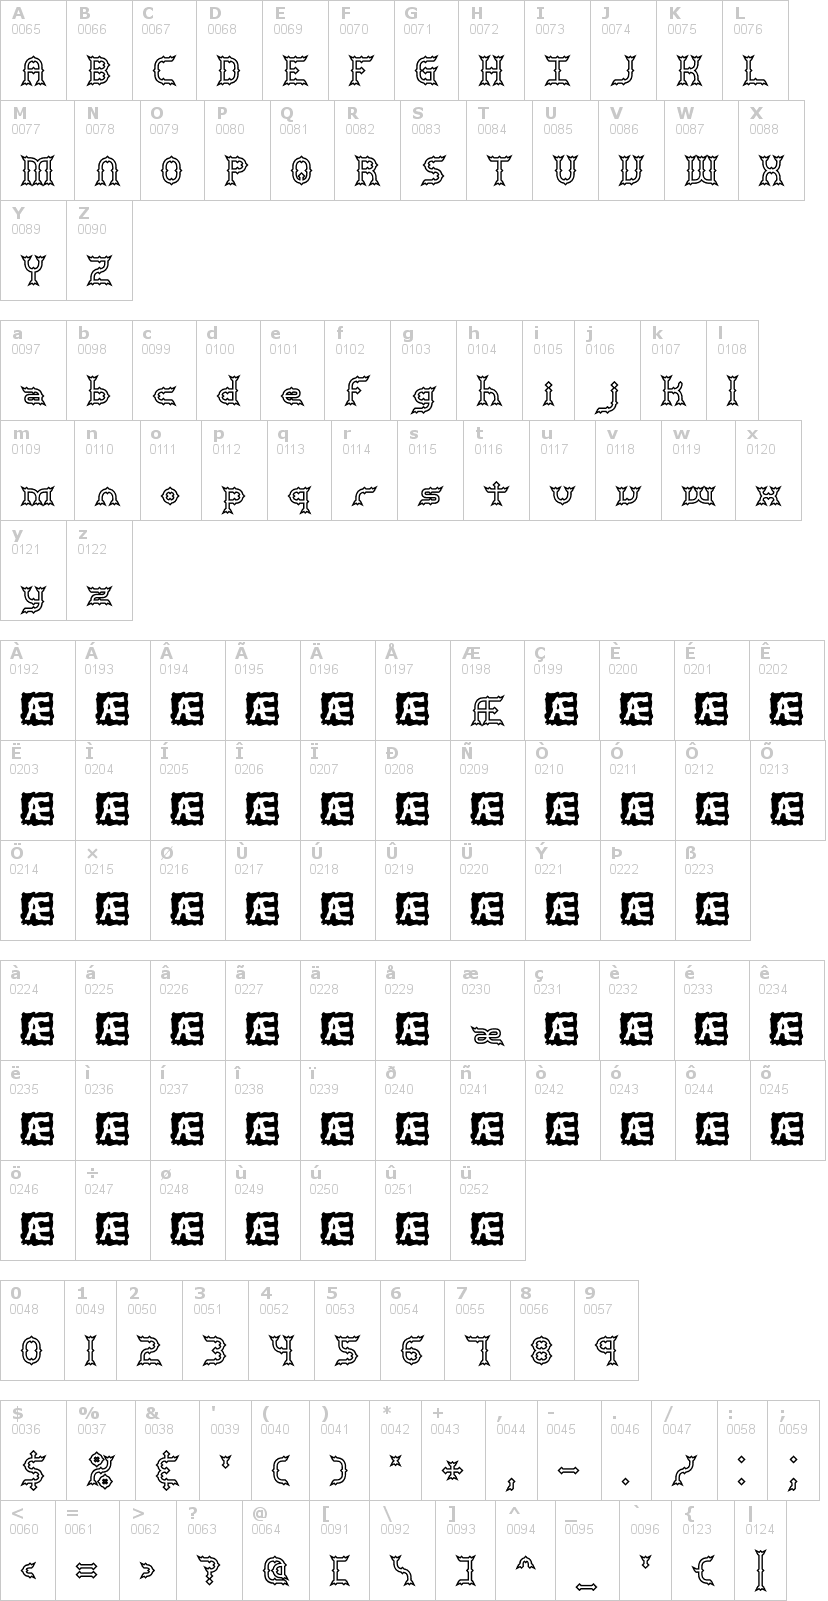 Lettere dell'alfabeto del font mincer-brk con le quali è possibile realizzare adesivi prespaziati